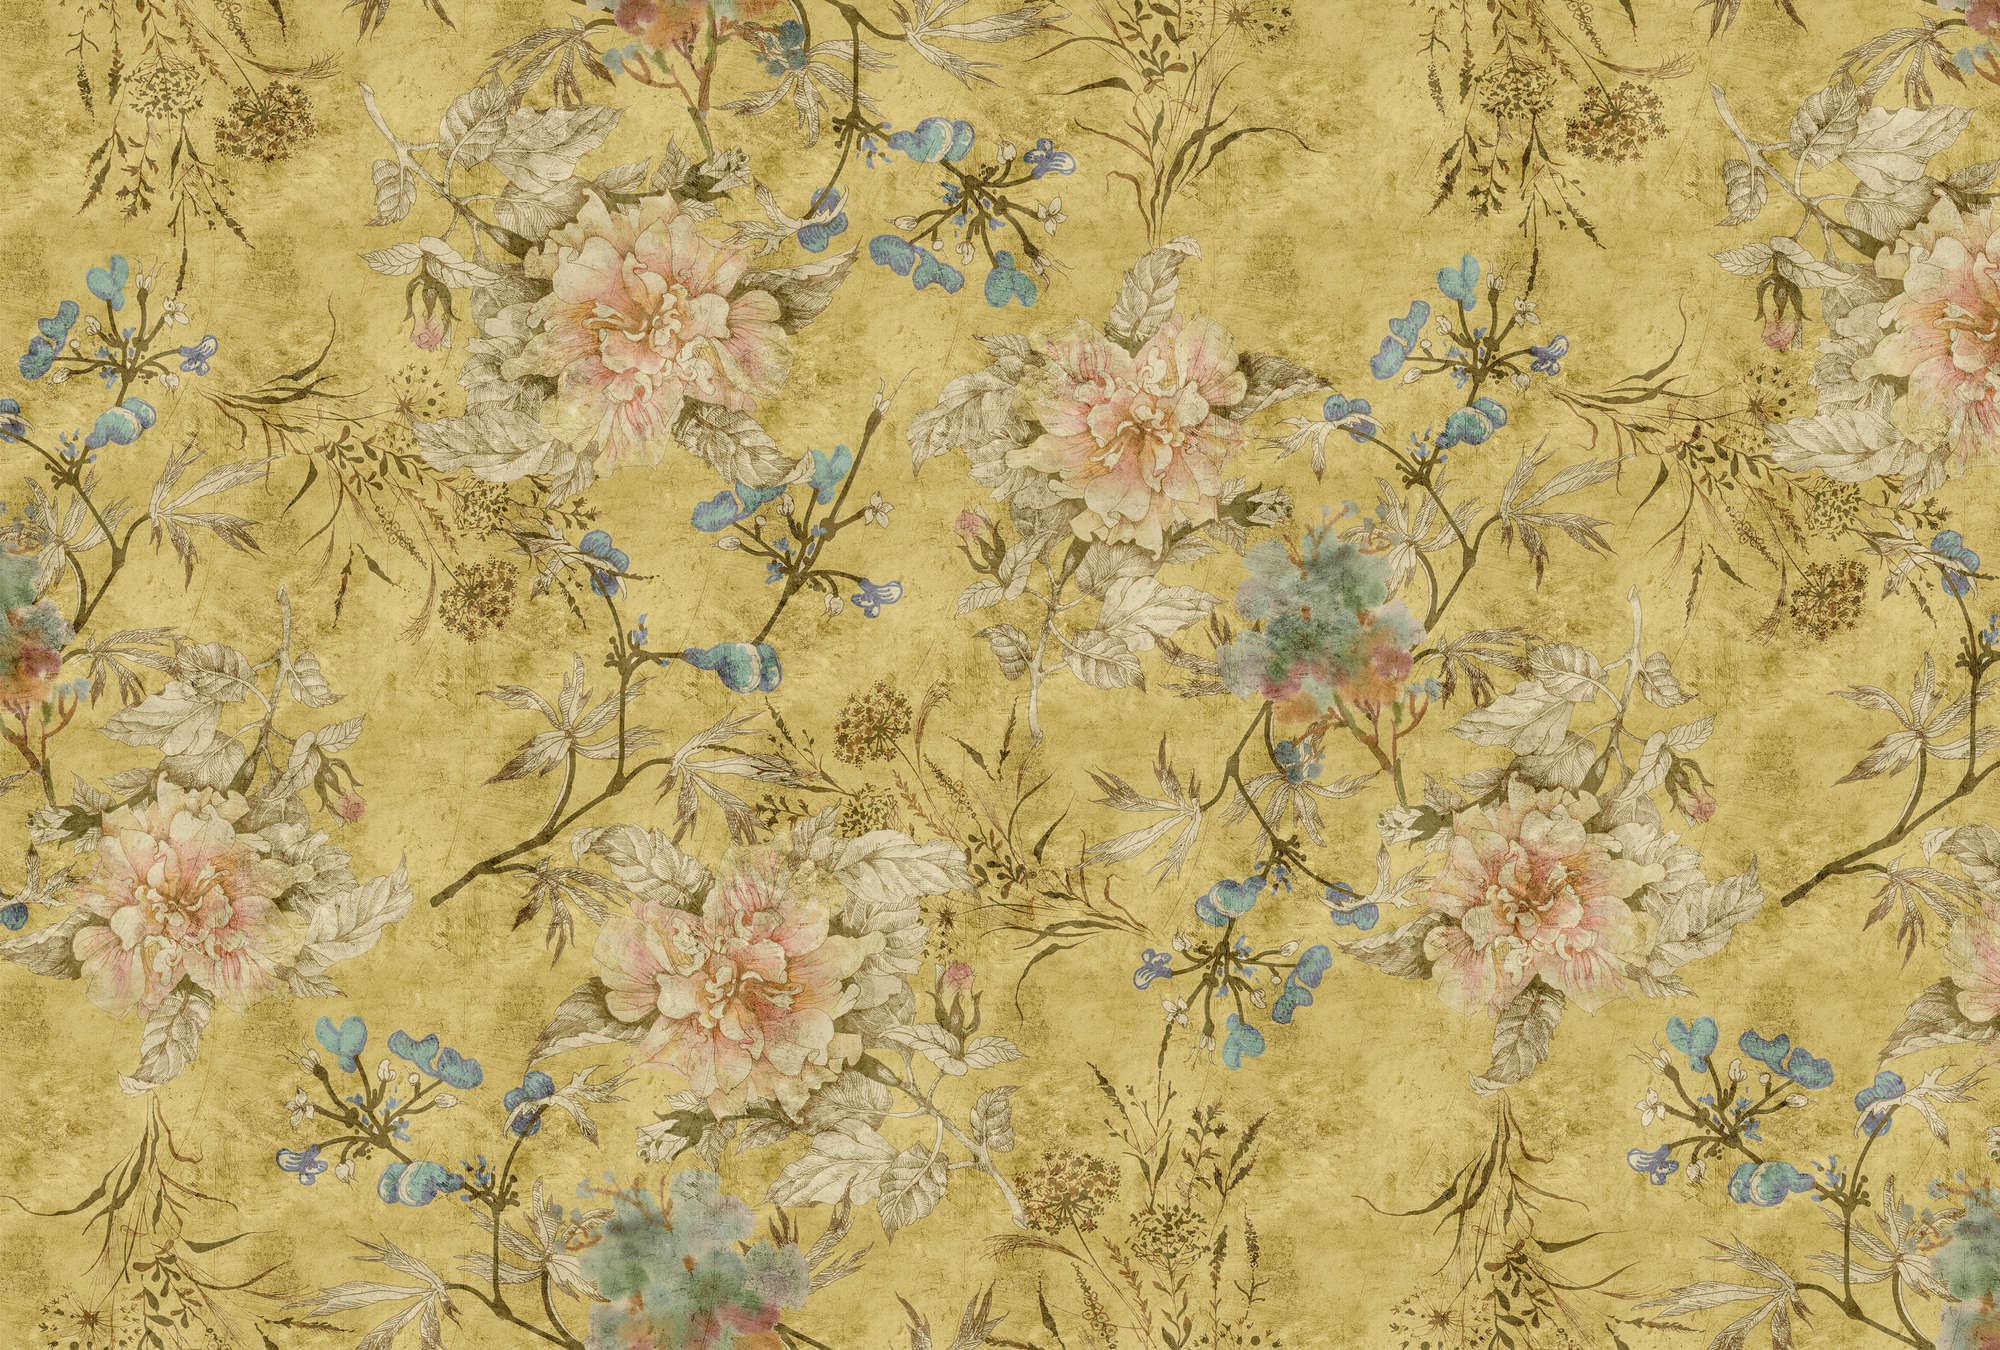             Tenderblossom 2 - Papel Pintado Flores Vintage - Textura Rayada - Amarillo | Tejido sin tejer texturado
        